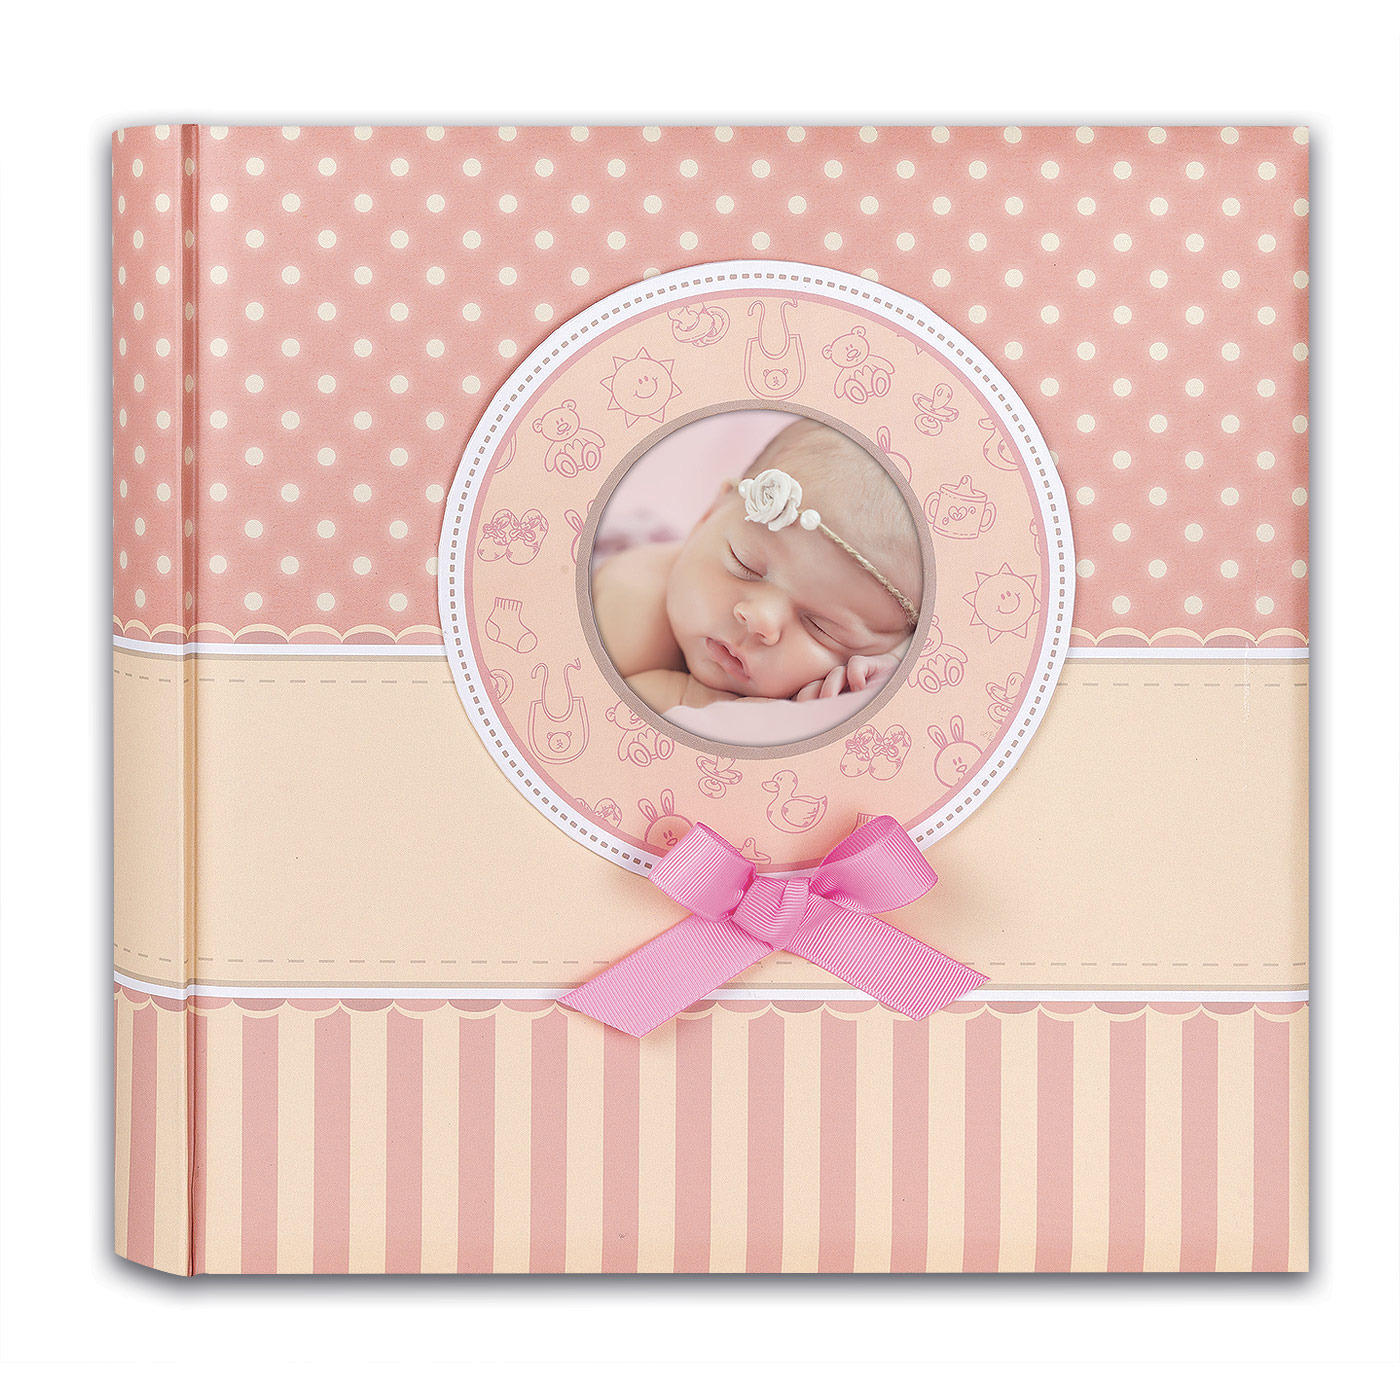 Fotoboek-fotoalbum Matilda baby meisje met 30 paginas roze 31 x 31 x 3,5 cm